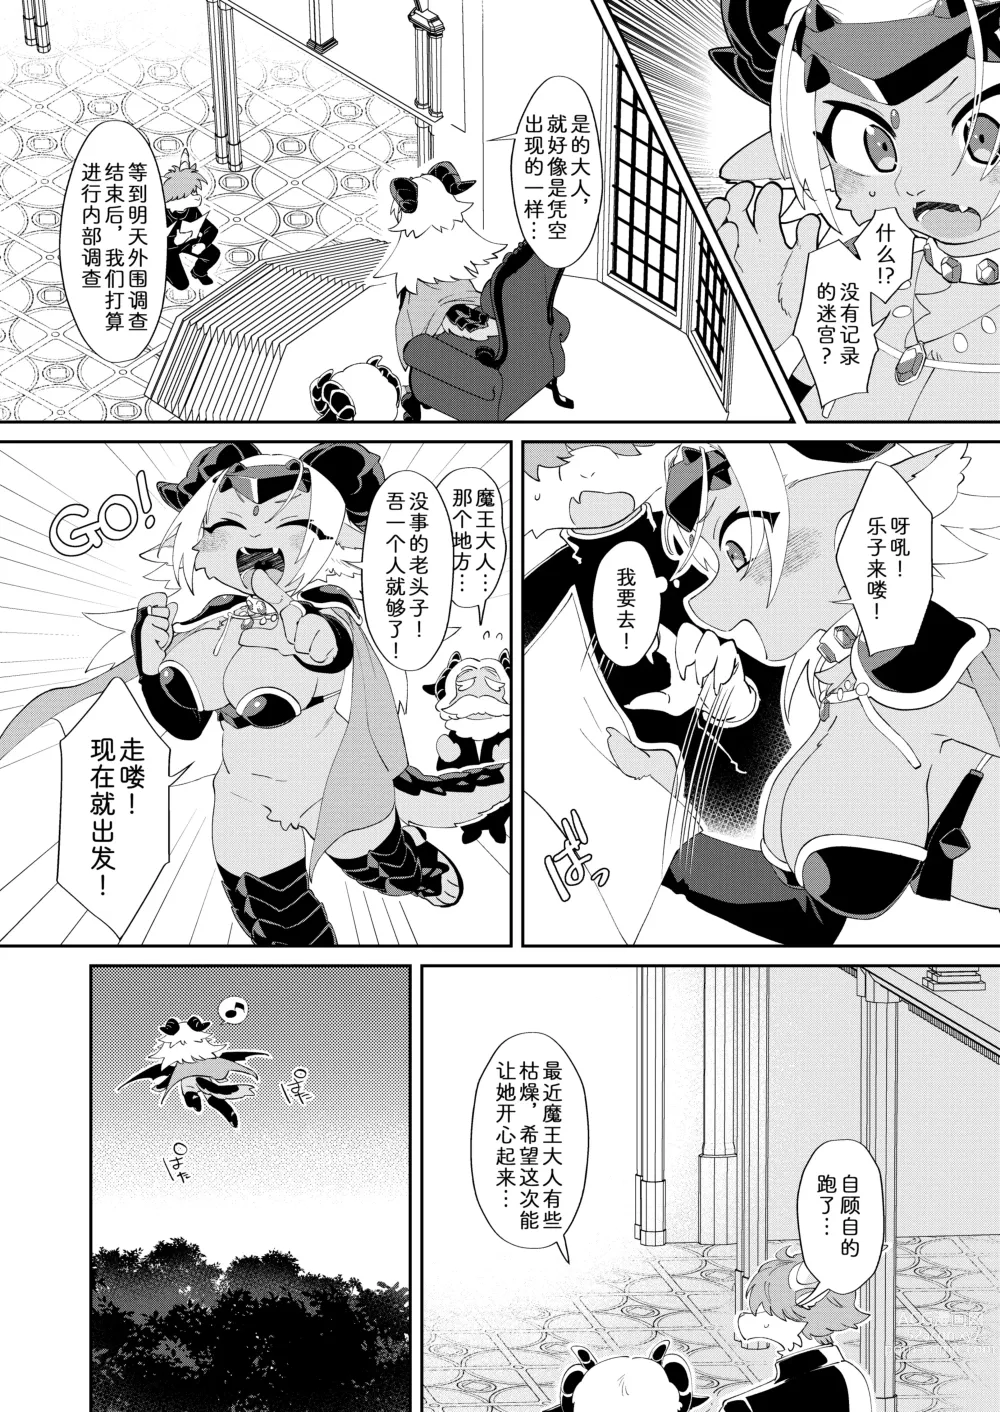 Page 5 of doujinshi 因为是魔王所以说色情迷宫什么的当然随便通关了